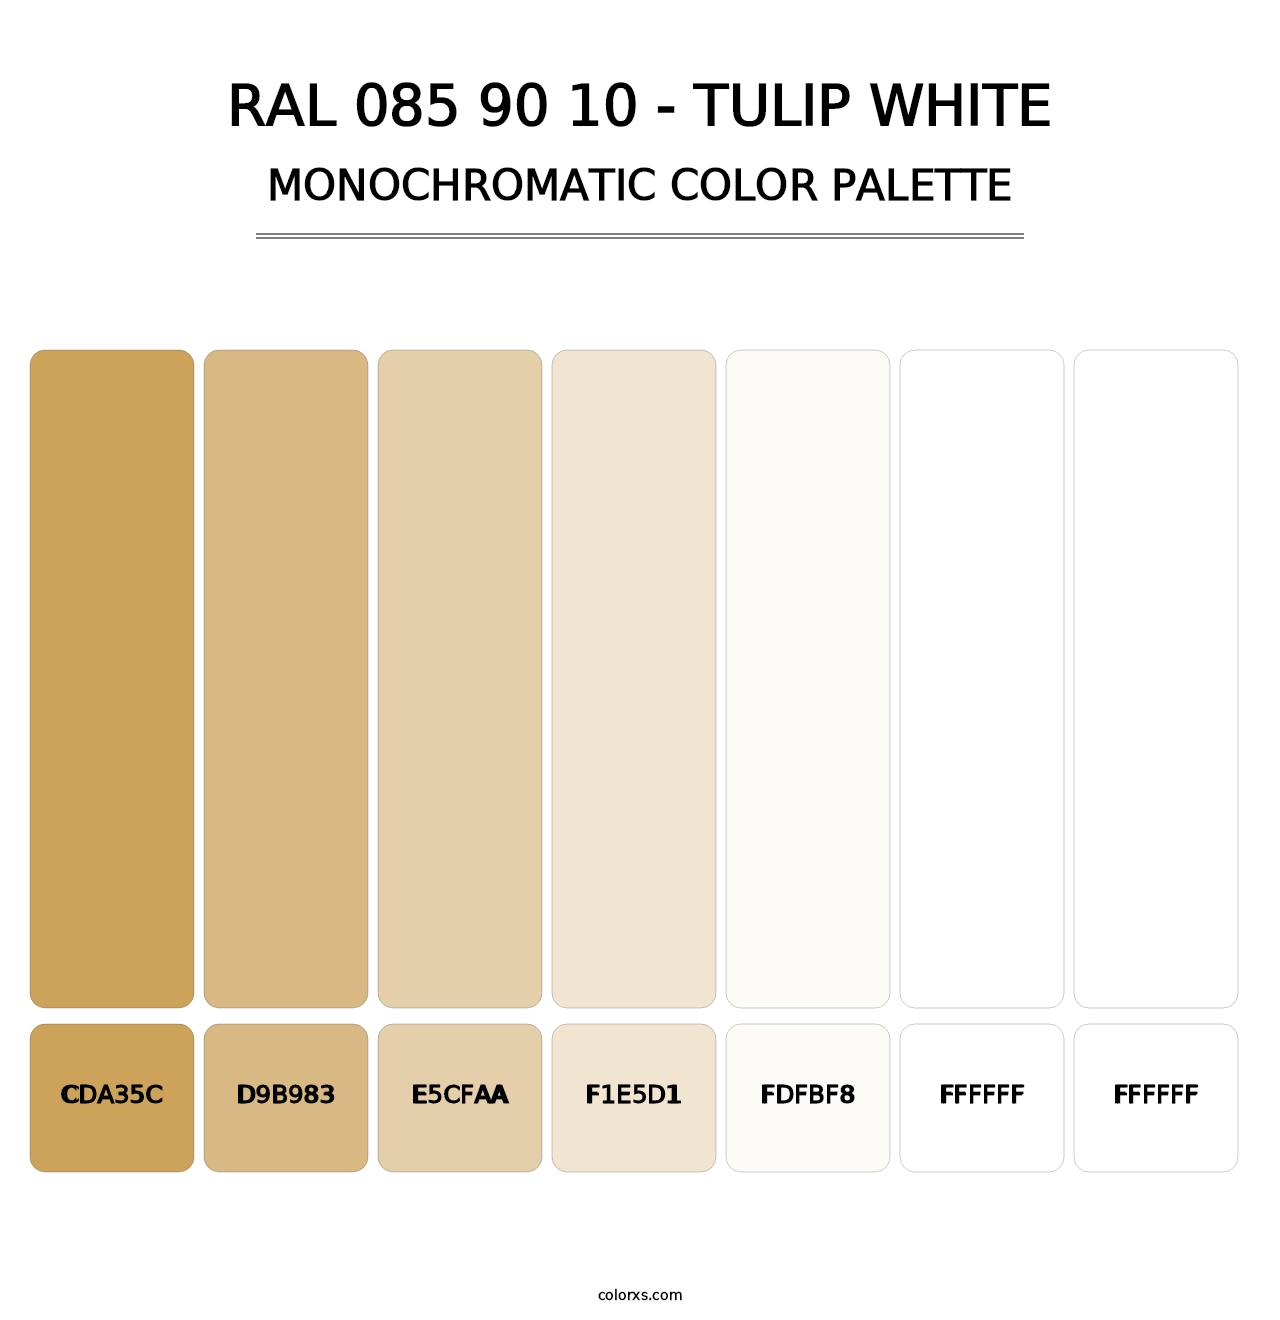 RAL 085 90 10 - Tulip White - Monochromatic Color Palette